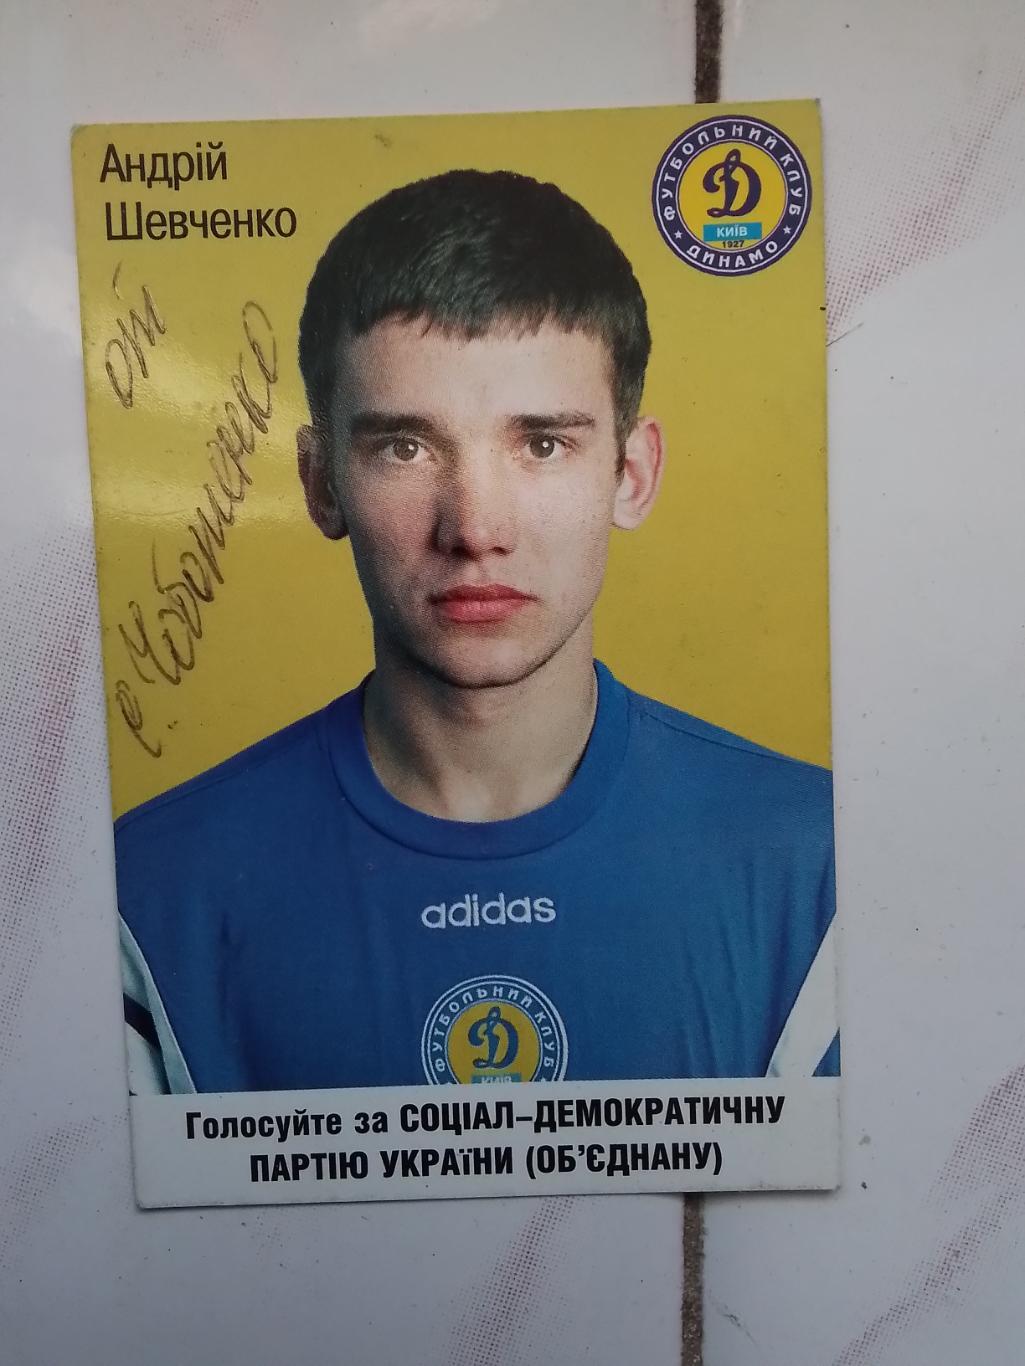 Календарик Андрей Шевченко Динамо Киев 1998